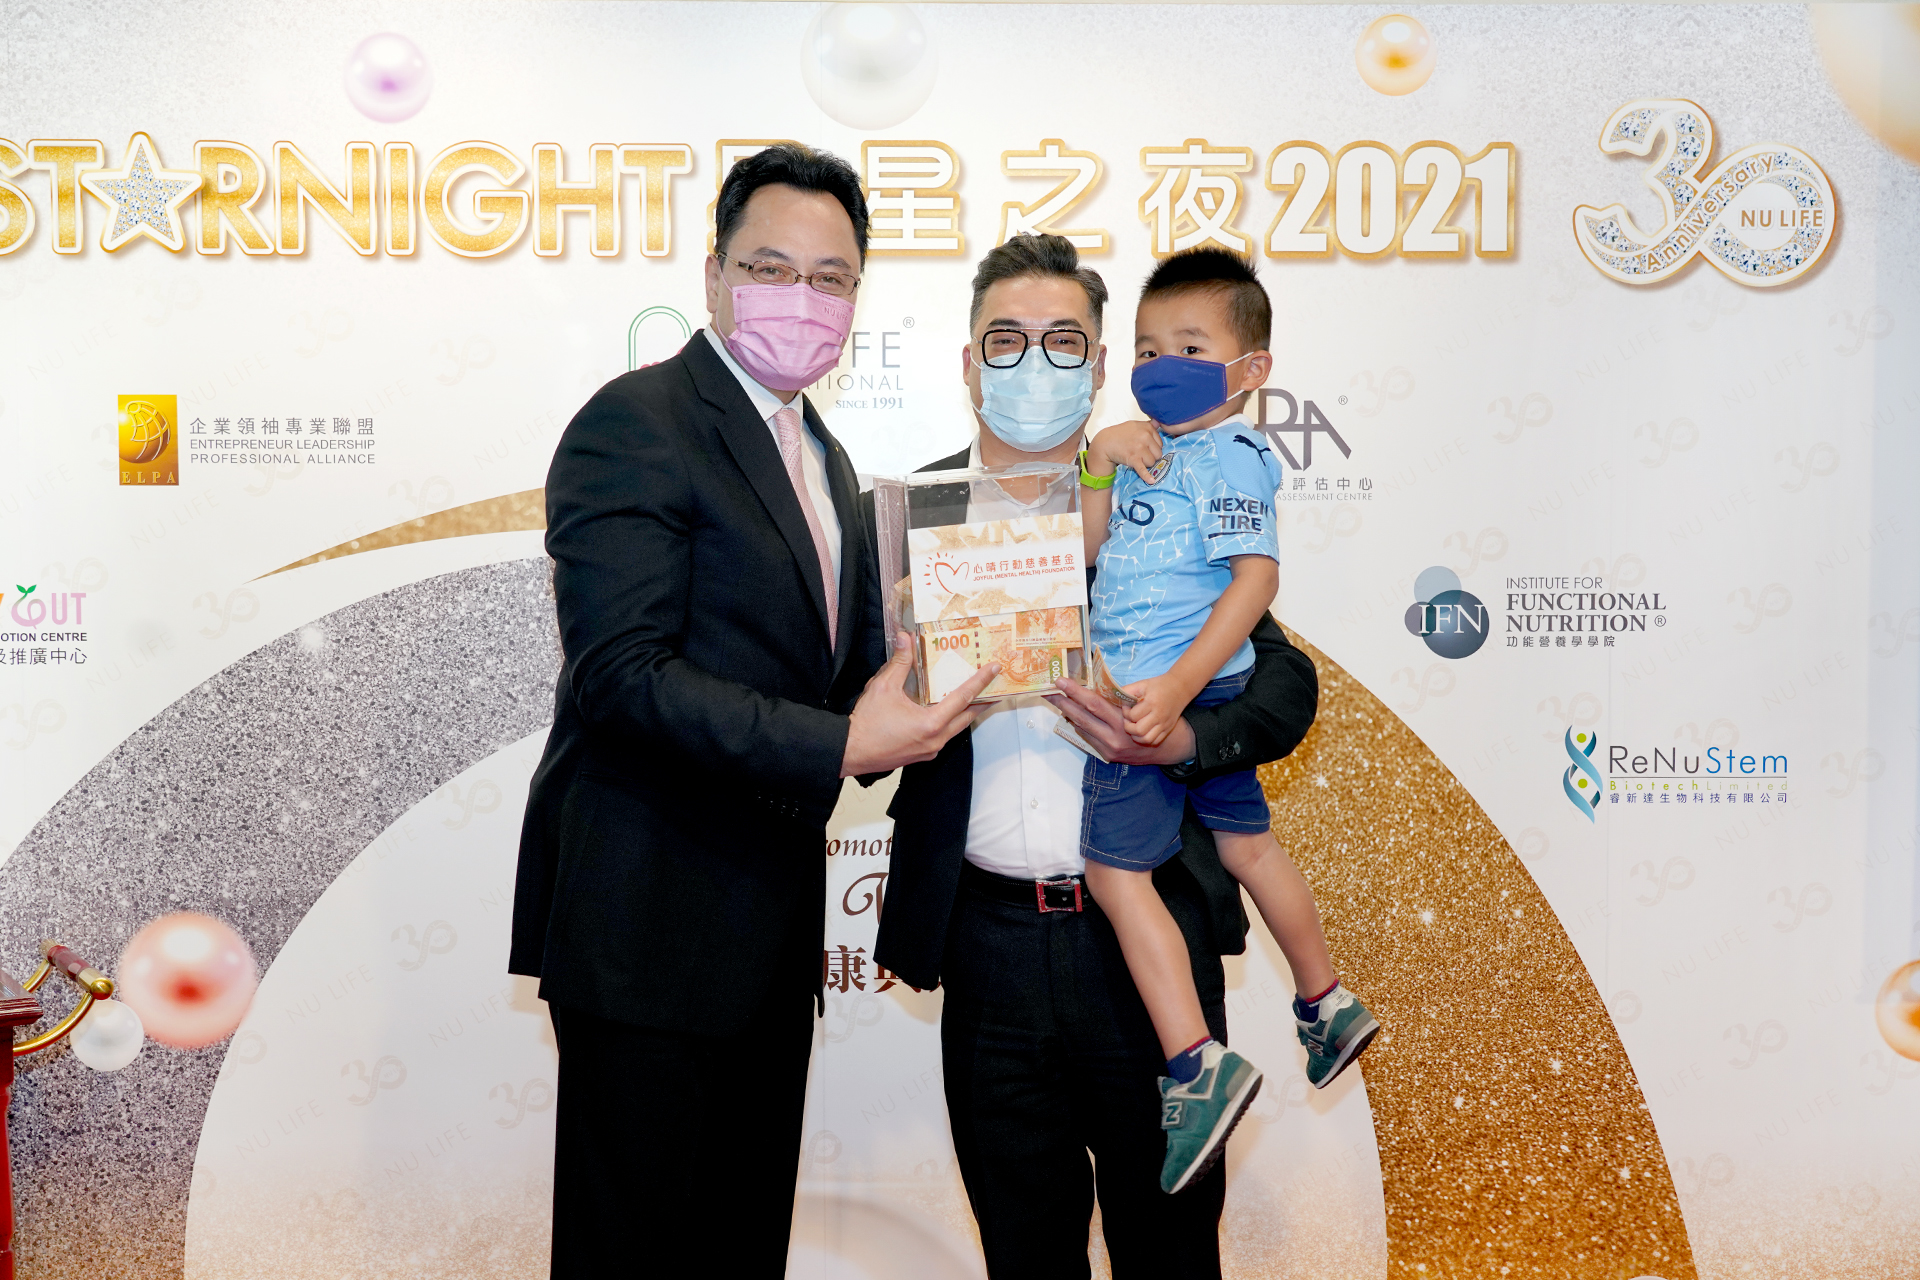 恭賀盧德輝先生從星級百萬富翁遊戲贏取HK$10,000獎金並與公司合共捐助HK$8000予「心晴行動慈善基金」